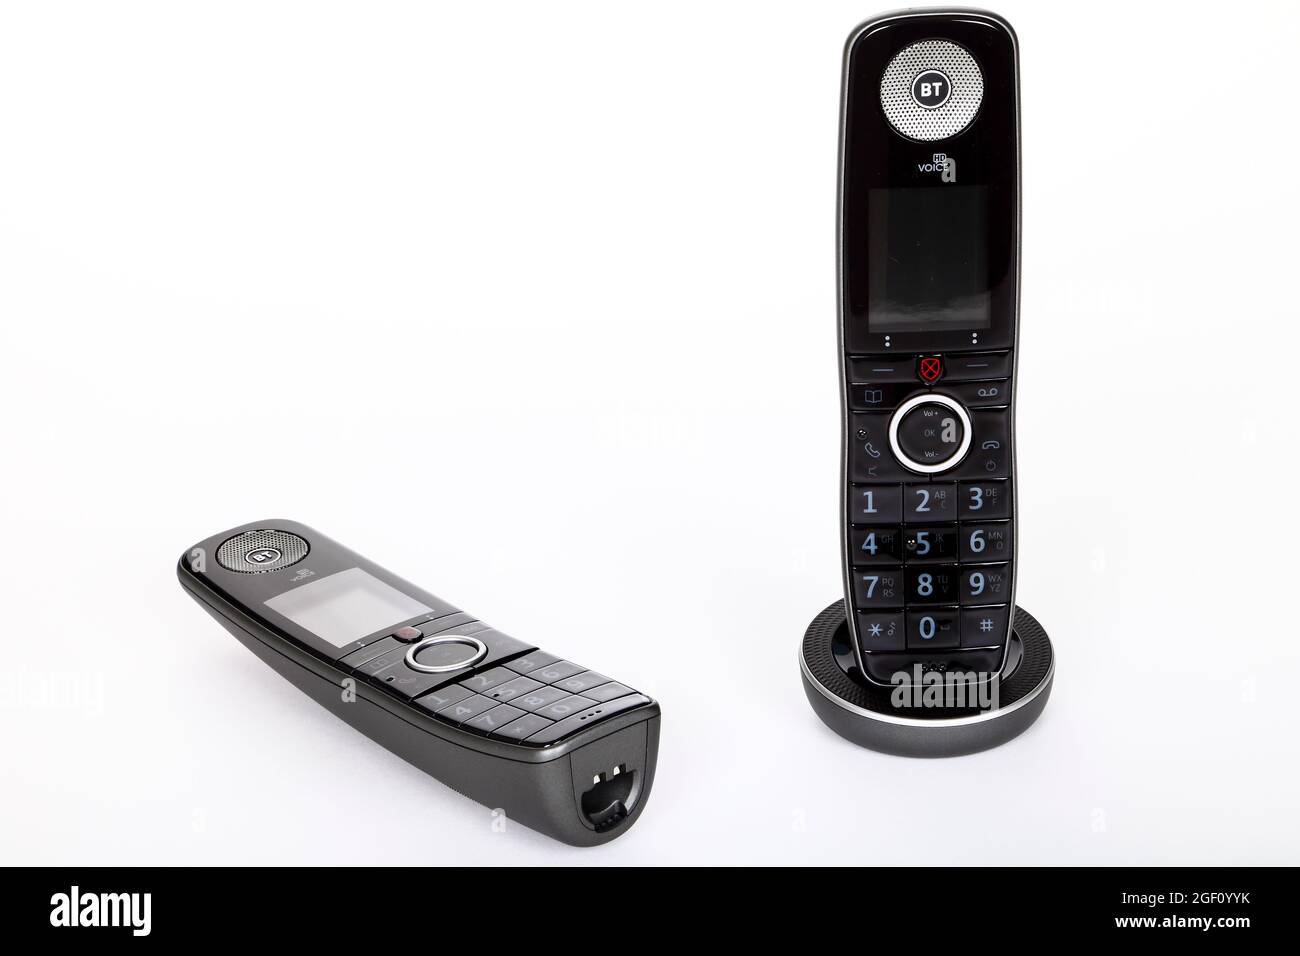 Nouveau téléphone personnel numérique avancé BT utilisant une connexion haut débit pour passer des appels téléphoniques de qualité HD. Banque D'Images